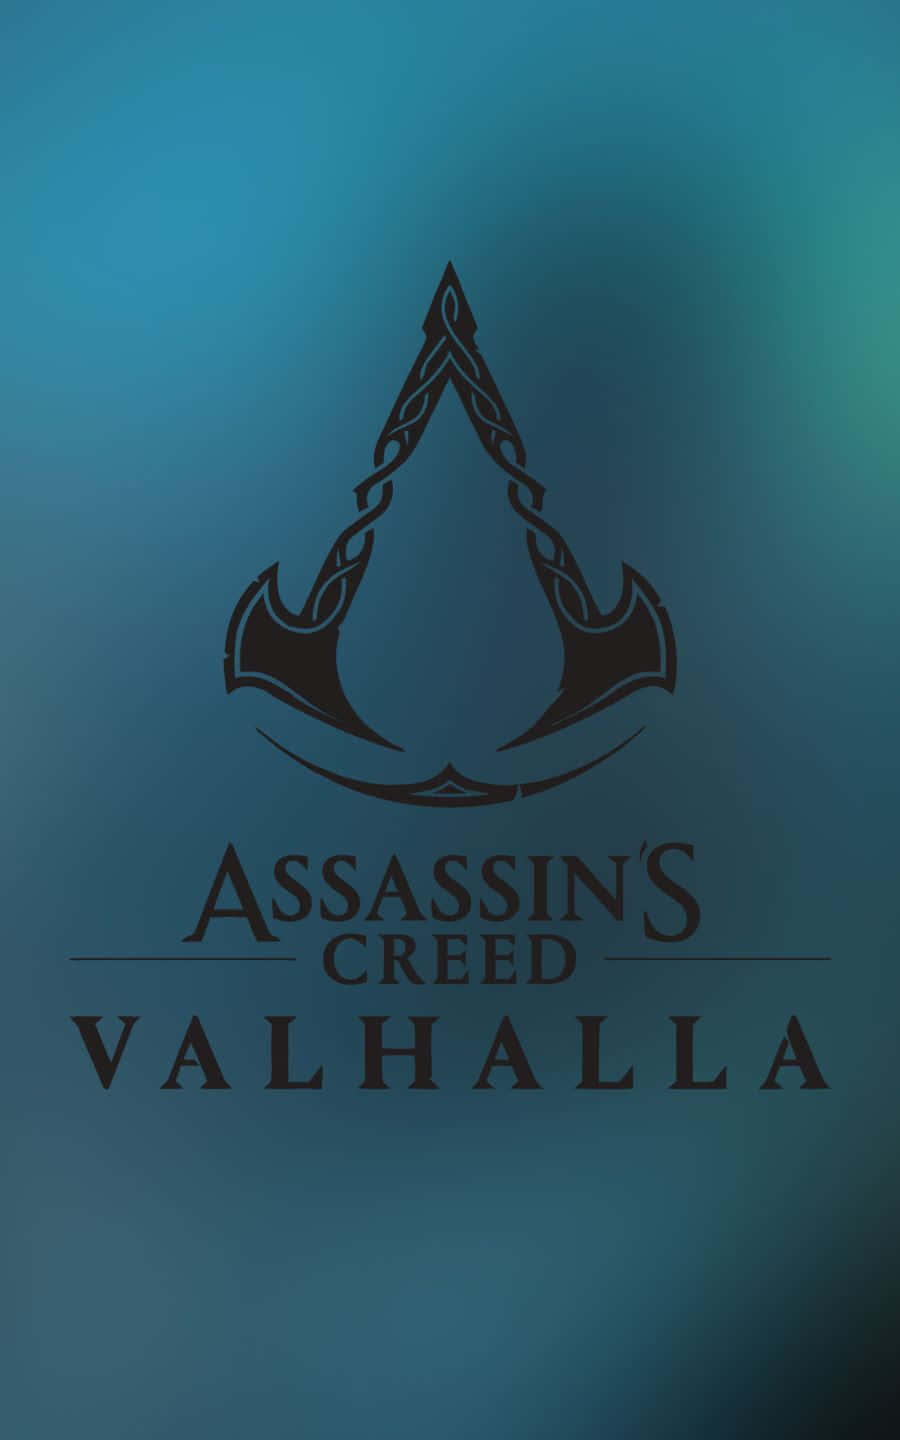 Títulodel Juego Y Logo En Fondo De Assassin's Creed Valhalla En 1440p